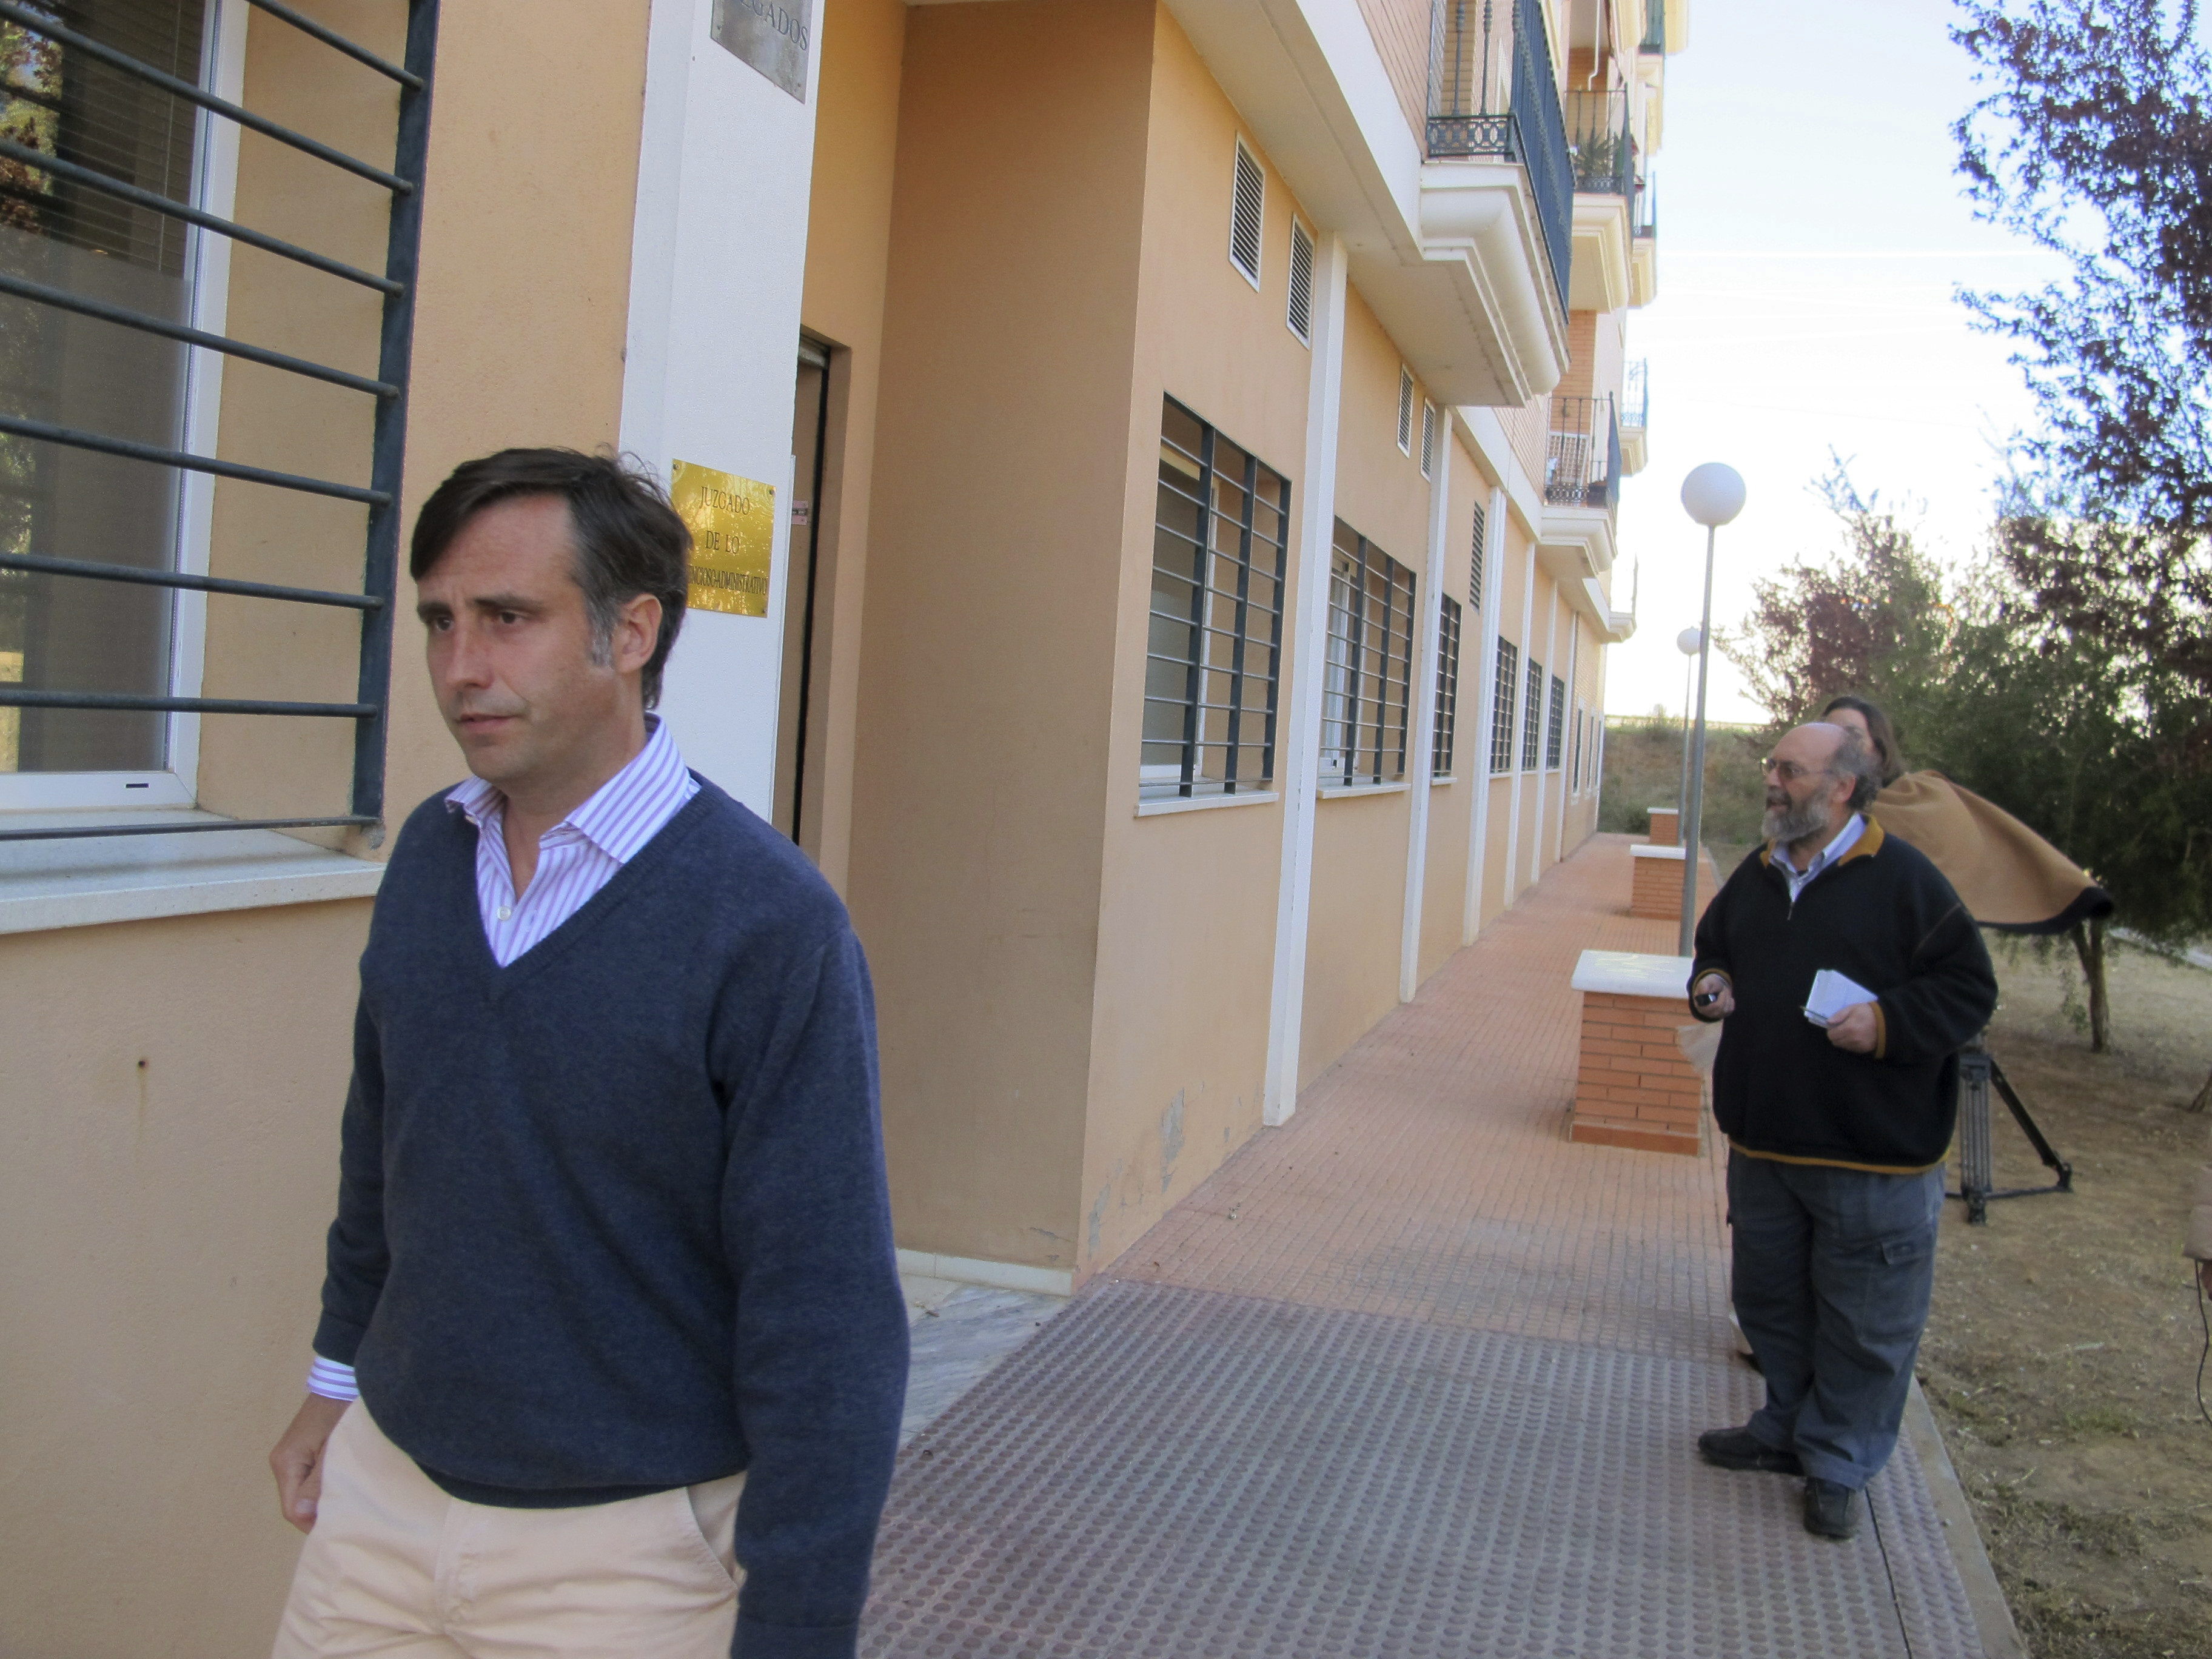 El Fiscal pide tres años para dos hijos de Ruiz Mateos por defraudar casi 1,4 millones